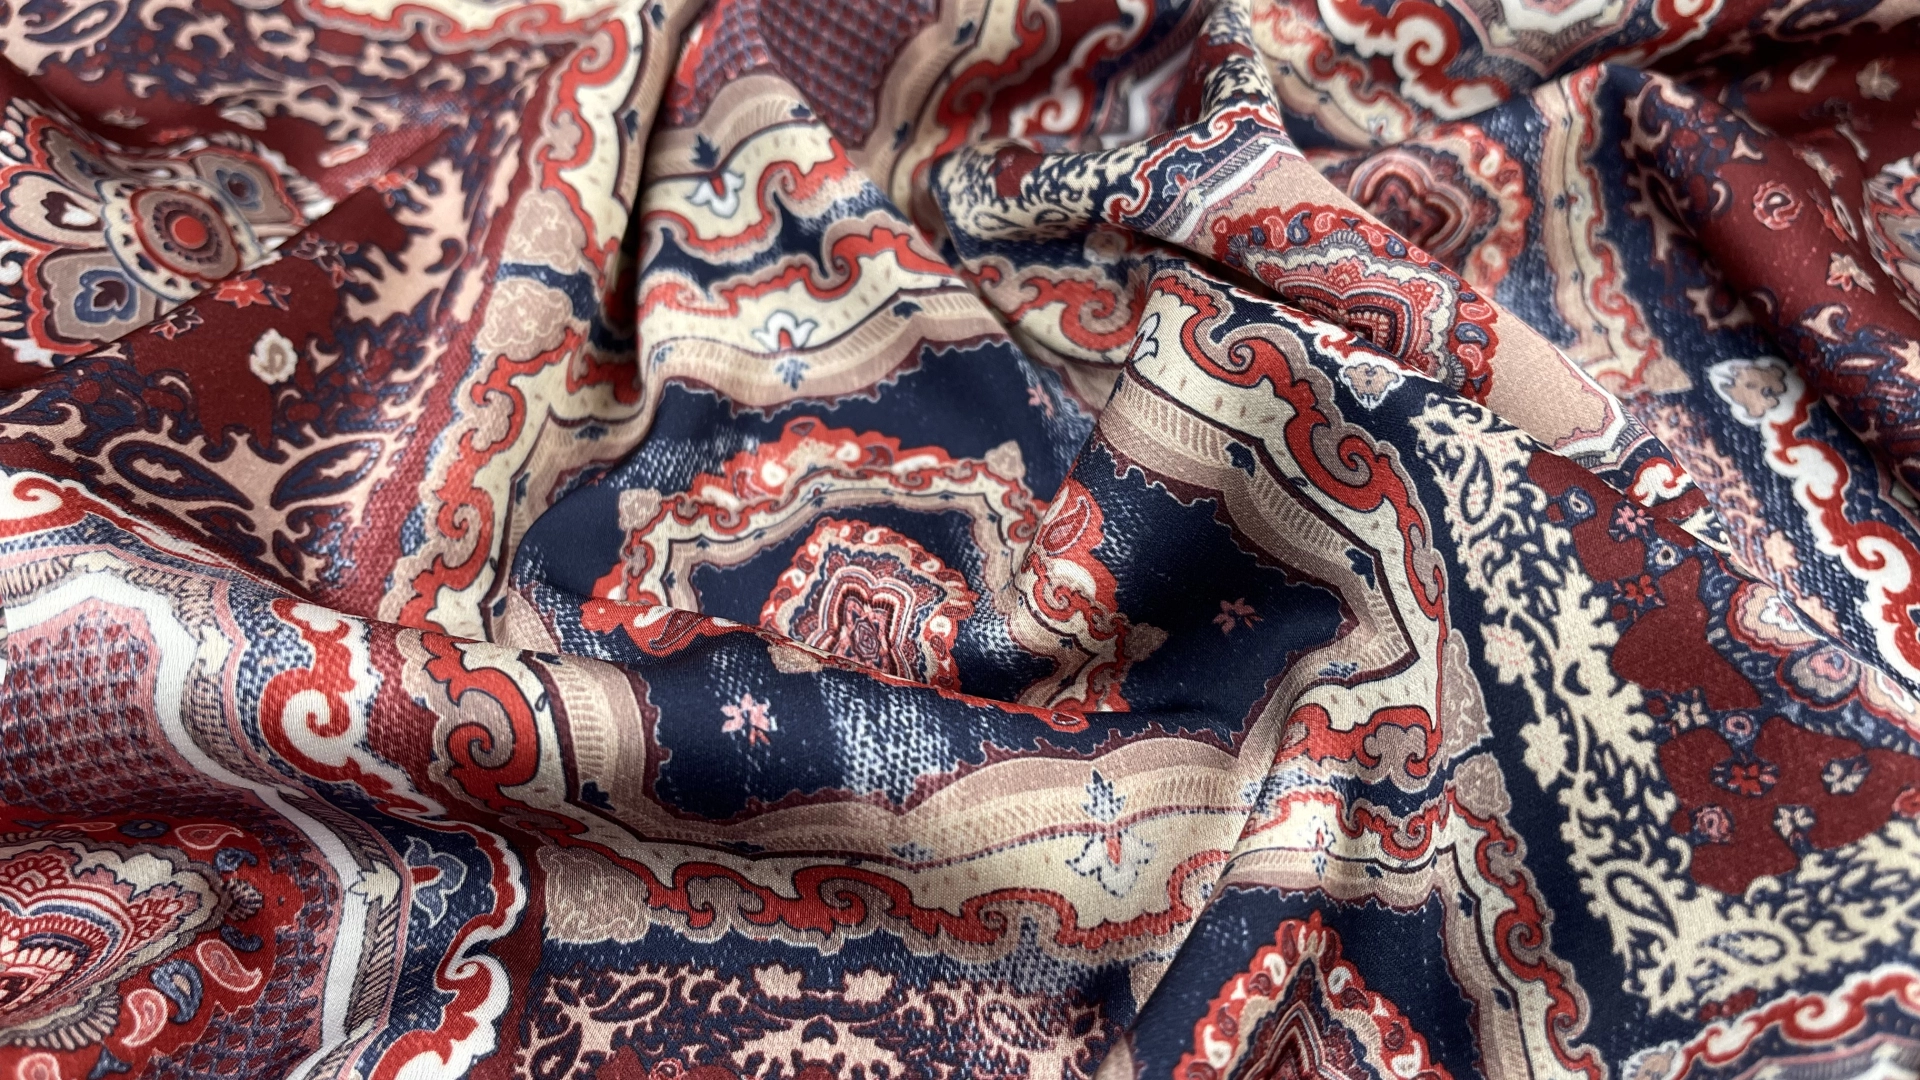 Атлас с торговым названием Армани с принтом в стиле печворк. Сочетание красно-бордовых оттенков с темно-синими. Тактильно атлас очень приятный, мягкий и струящийся. Идеален для пошива рубашки или платья.